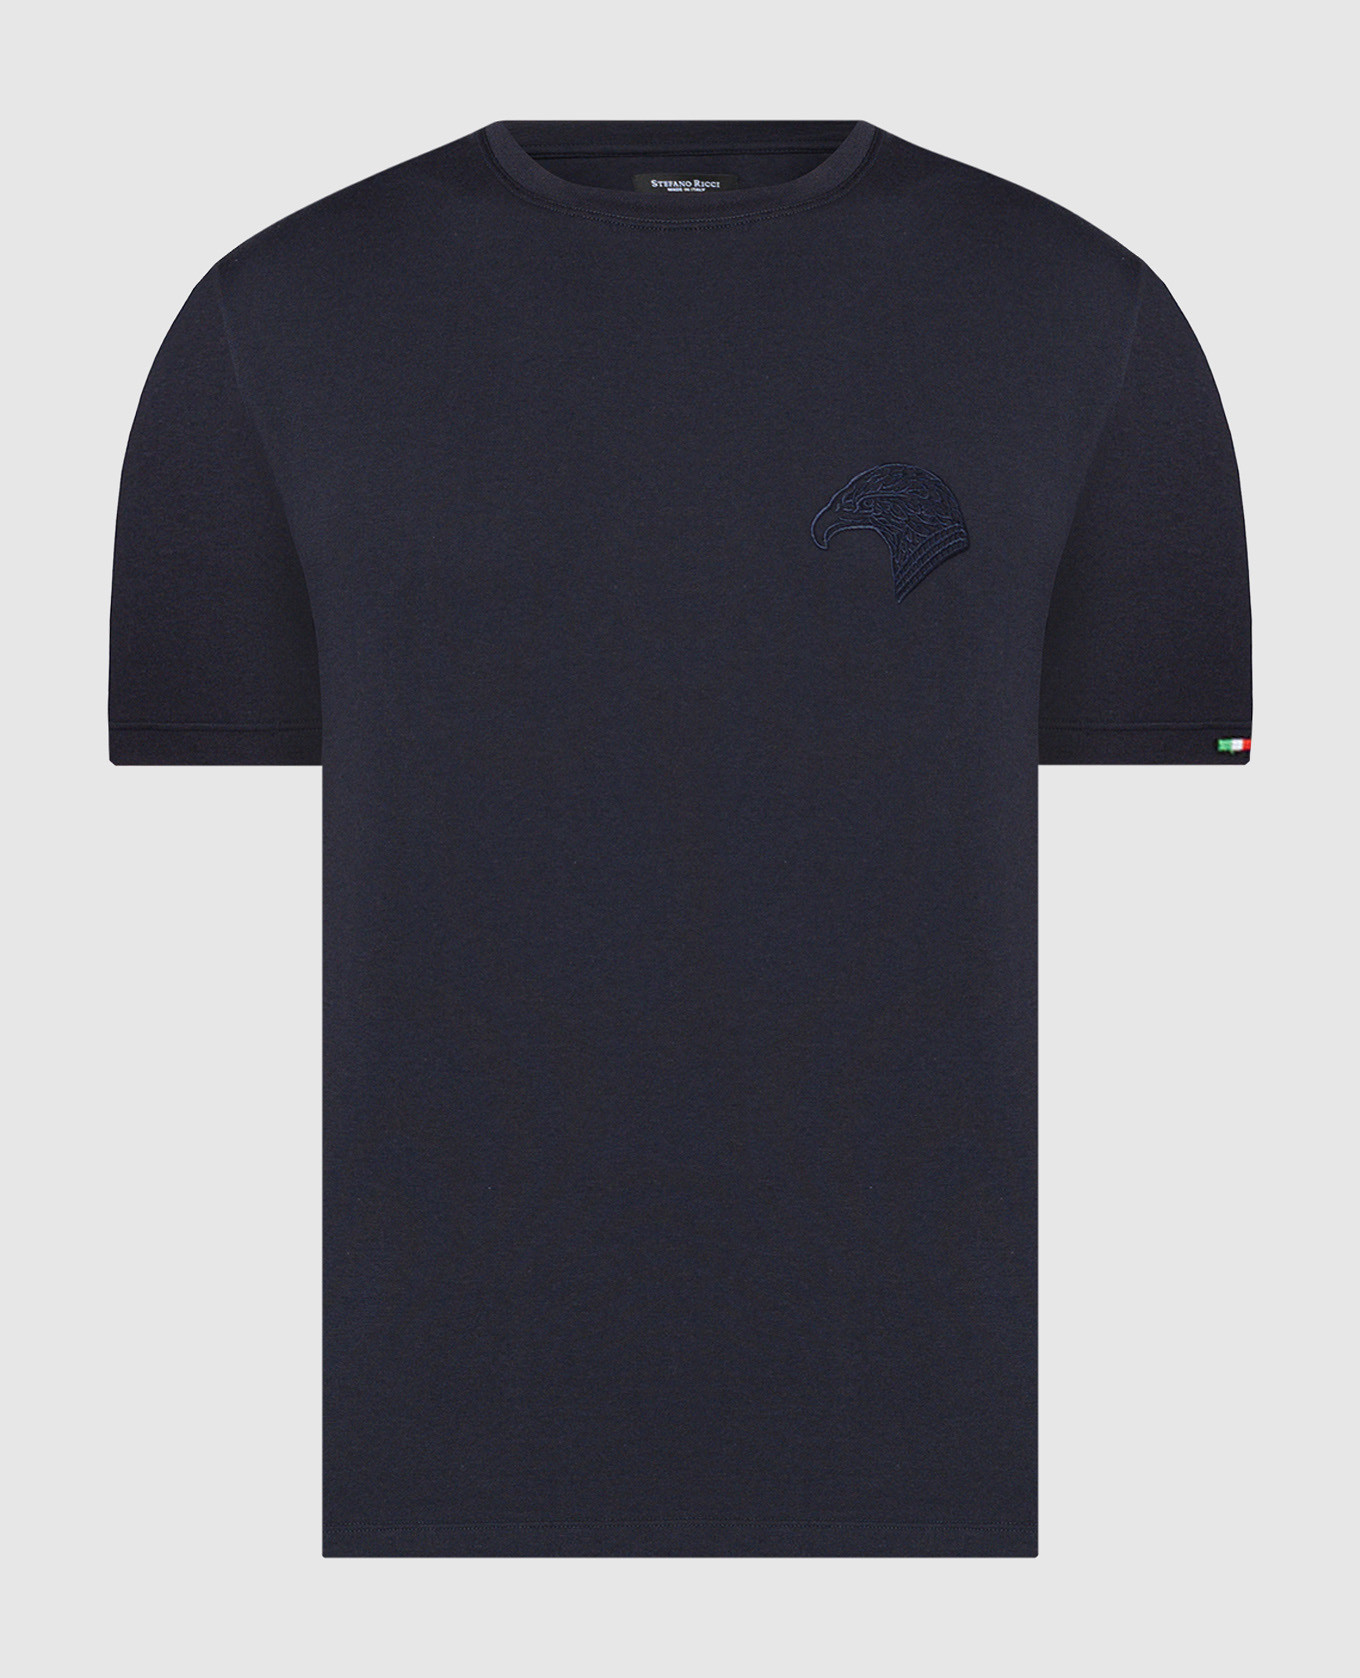 Голубая футболка с вышивкой логотипа эмблемы в виде головы орла